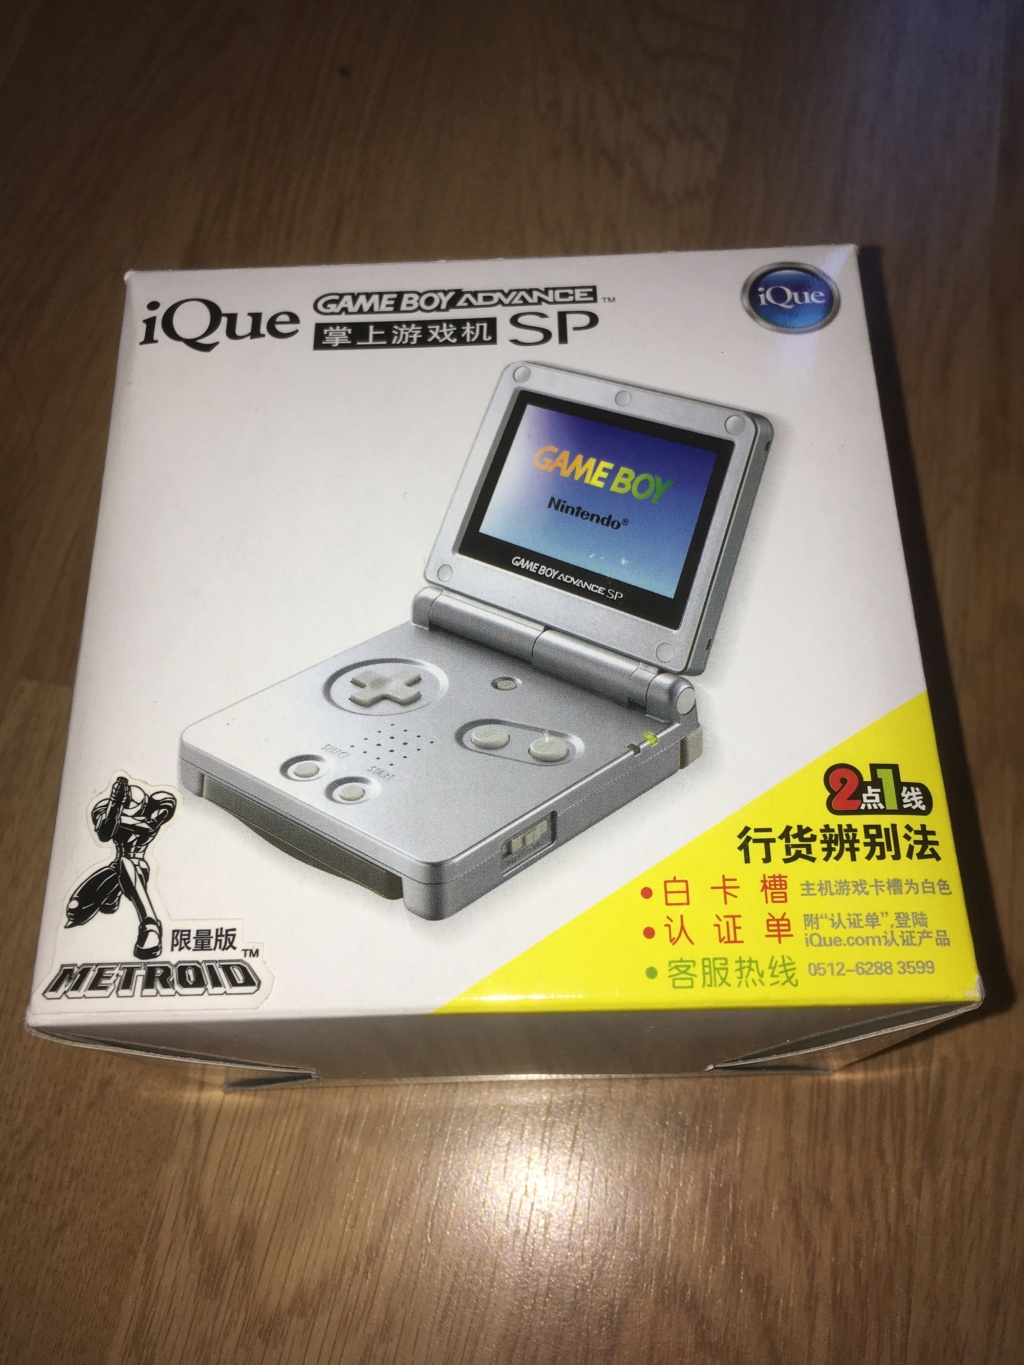 [VDS] Rarissime Game Boy Advance SP iQue Samus / Metroïd complète état neuf Img_6612